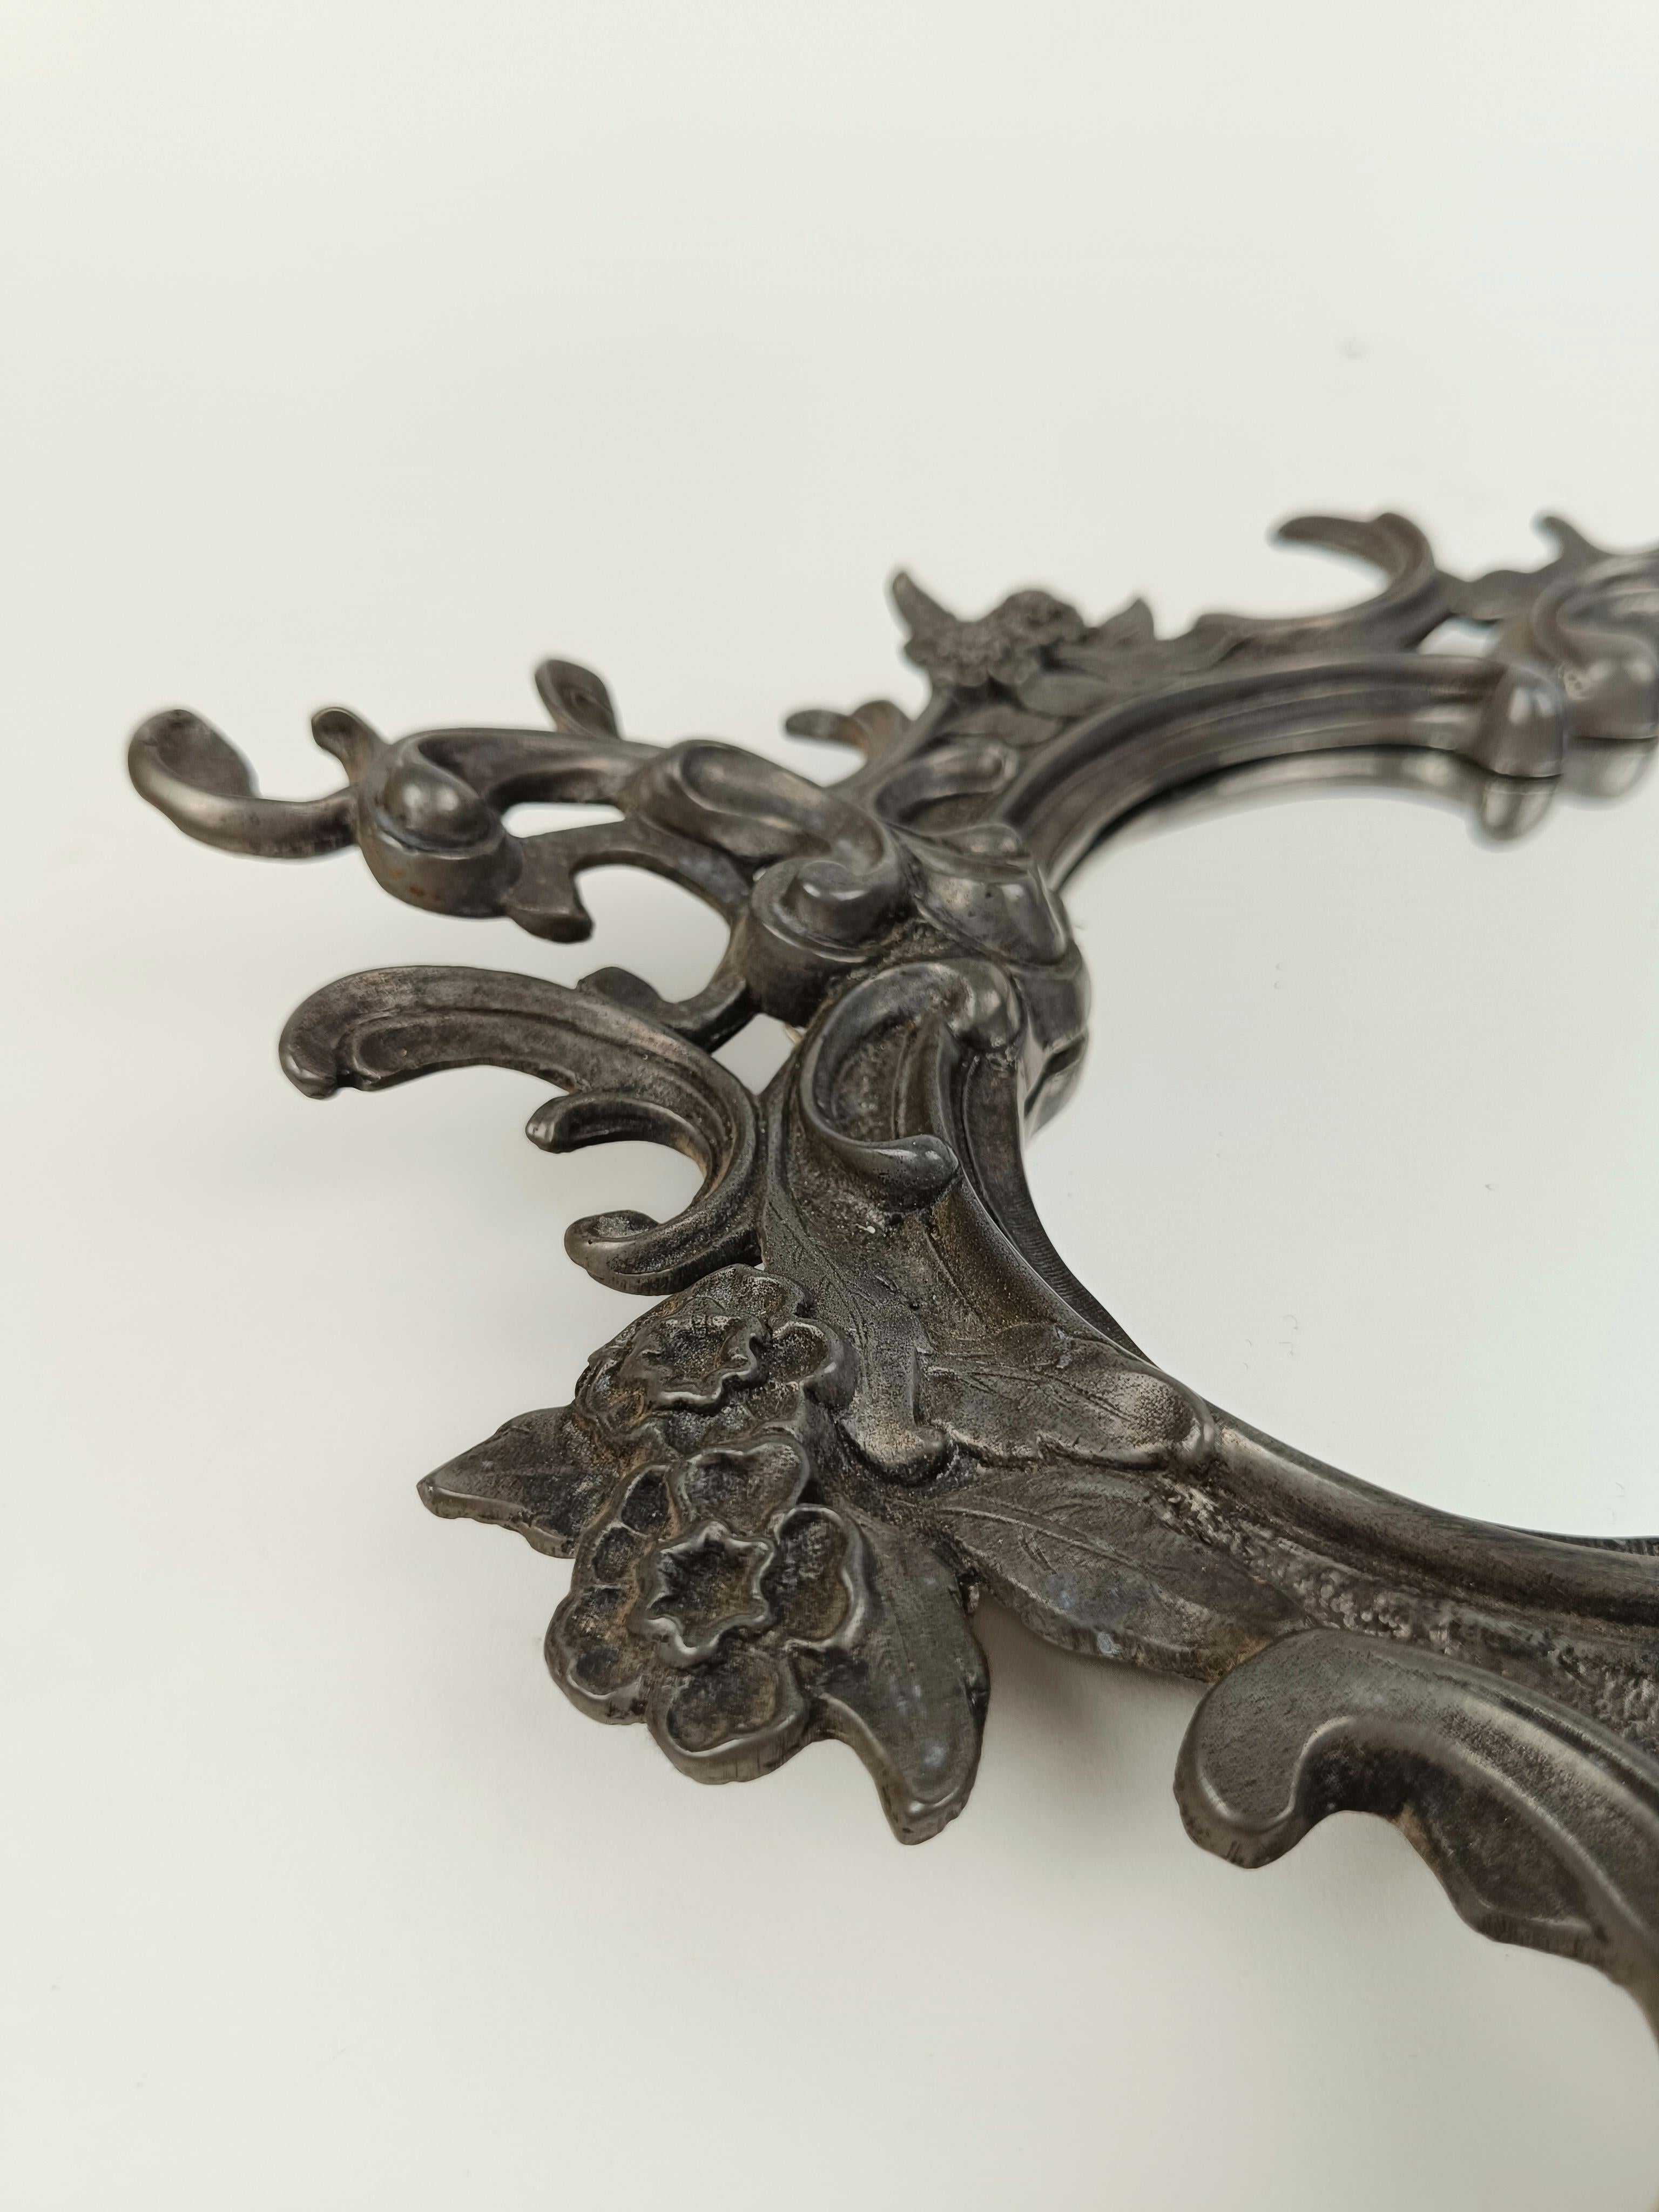 Un miroir vintage fabriqué autour de la première moitié du 20e siècle mais dans le style des miroirs antiques européens du 18e siècle dans le style baroque ou rococo.
La structure de forme irrégulière et sinueuse est en argent allemand ciselé à la